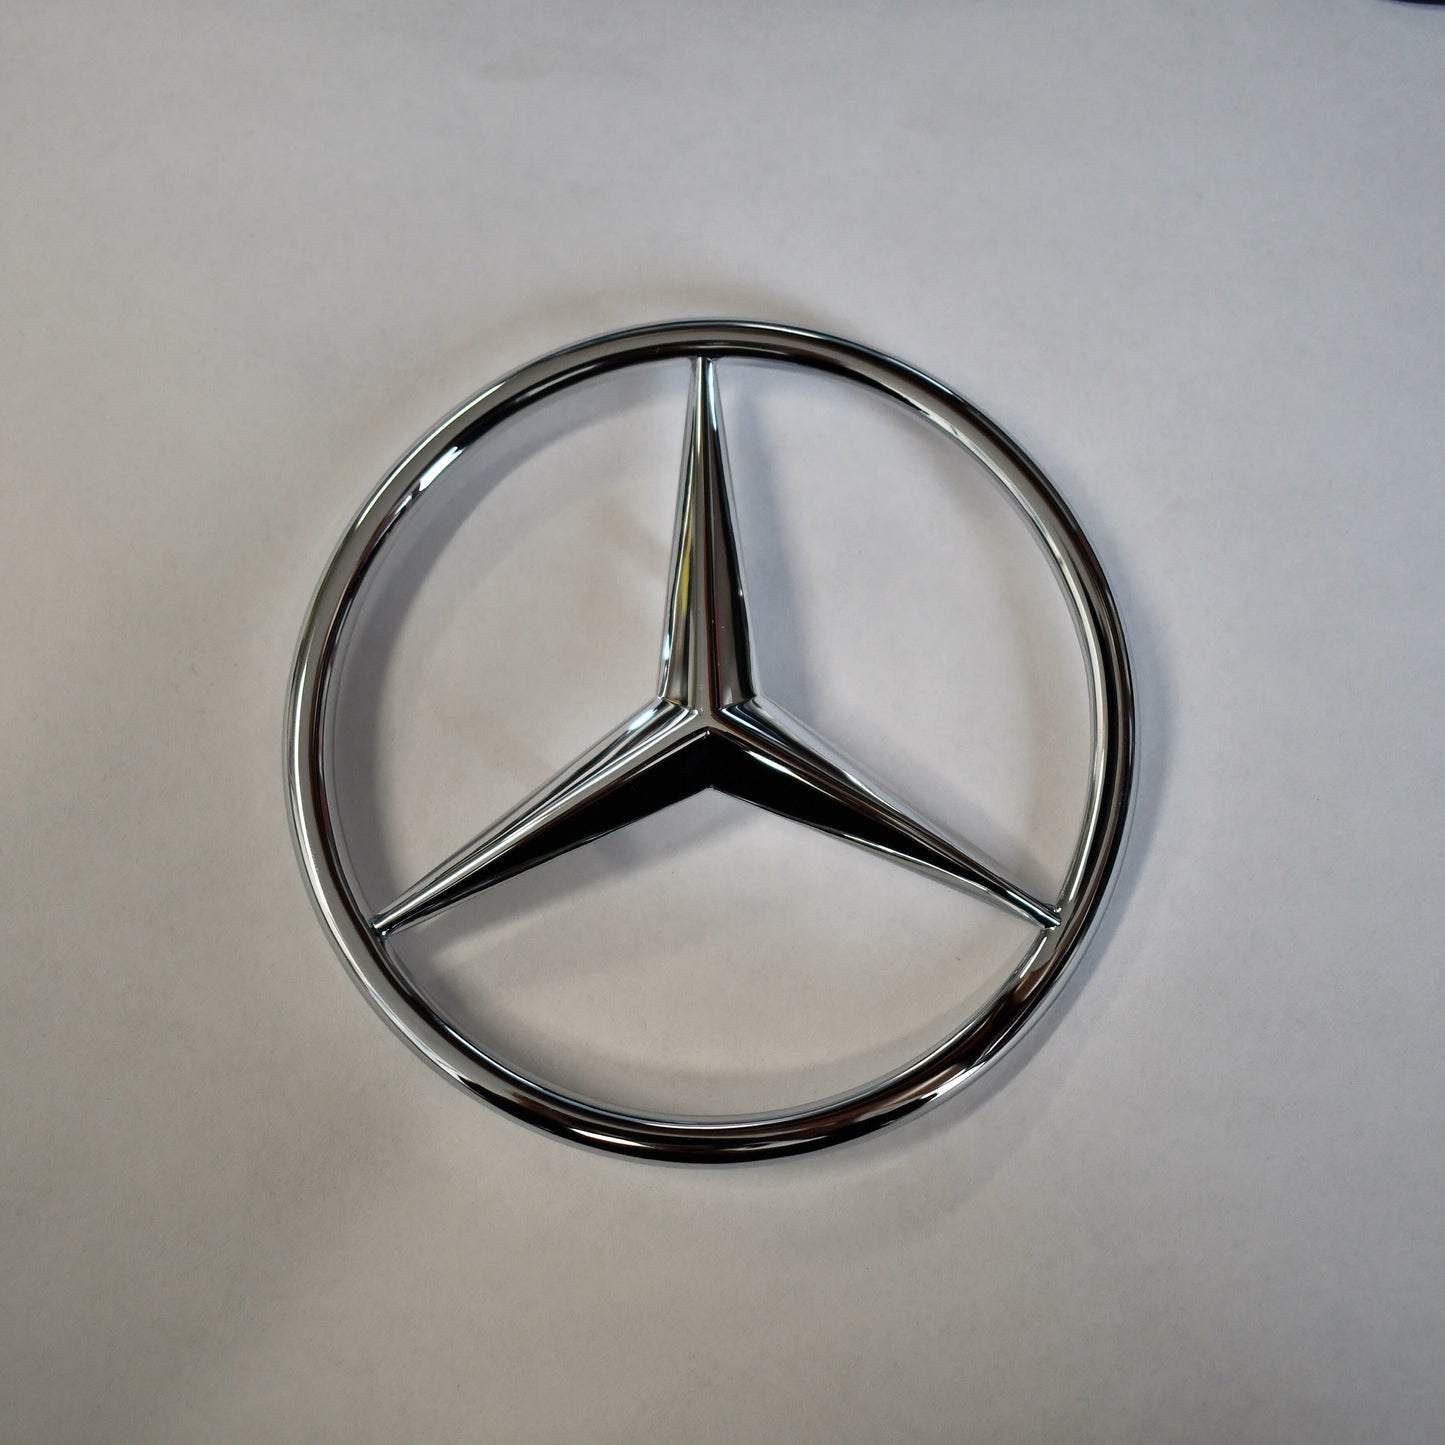 Classic Trim Parts - 560SL Trunk Star Emblem Badge Genuine Mercedes - R107 Models - Mercedes-Benz